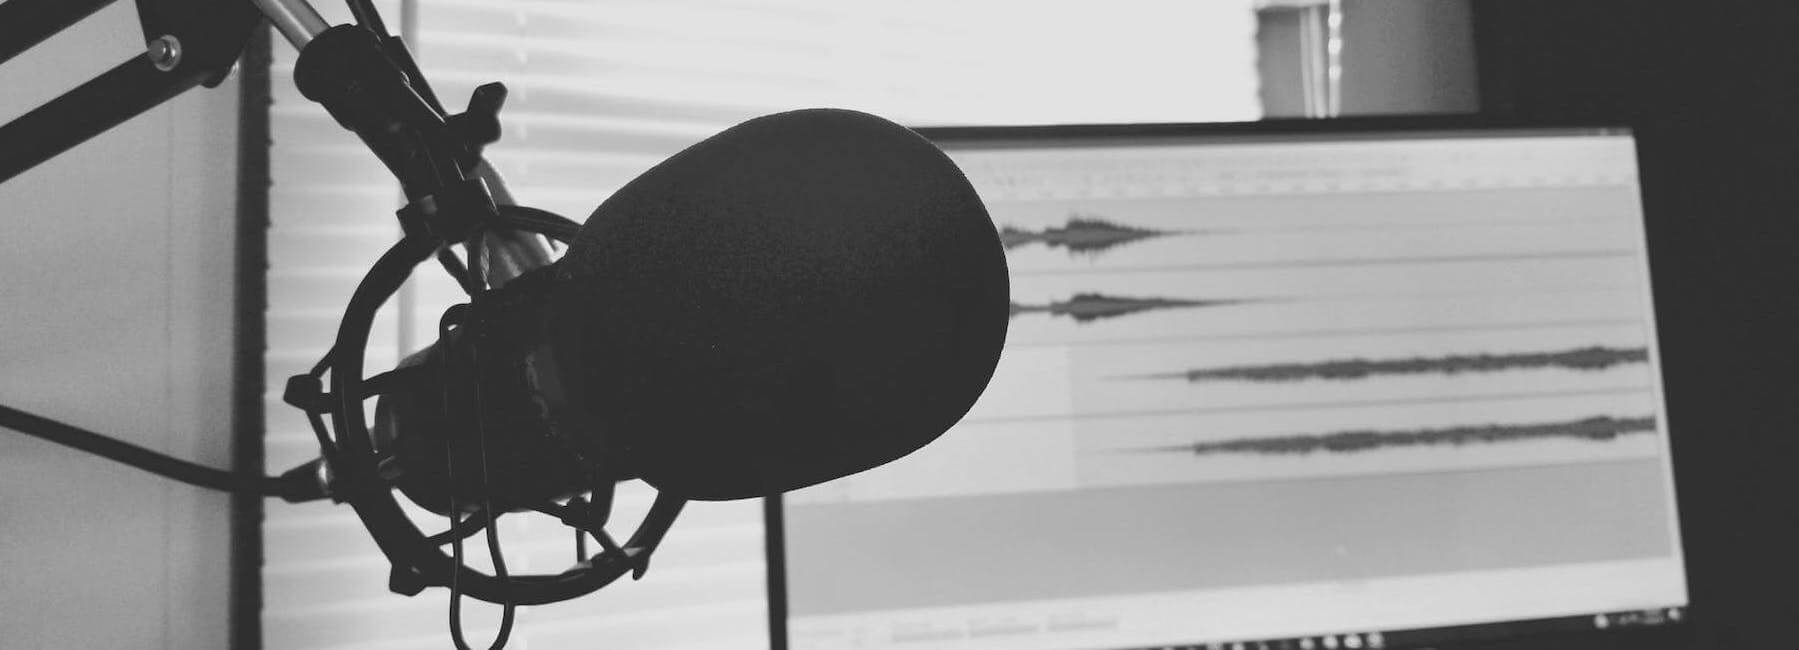 De 7 beste luistertips voor een podcast als marketingtool